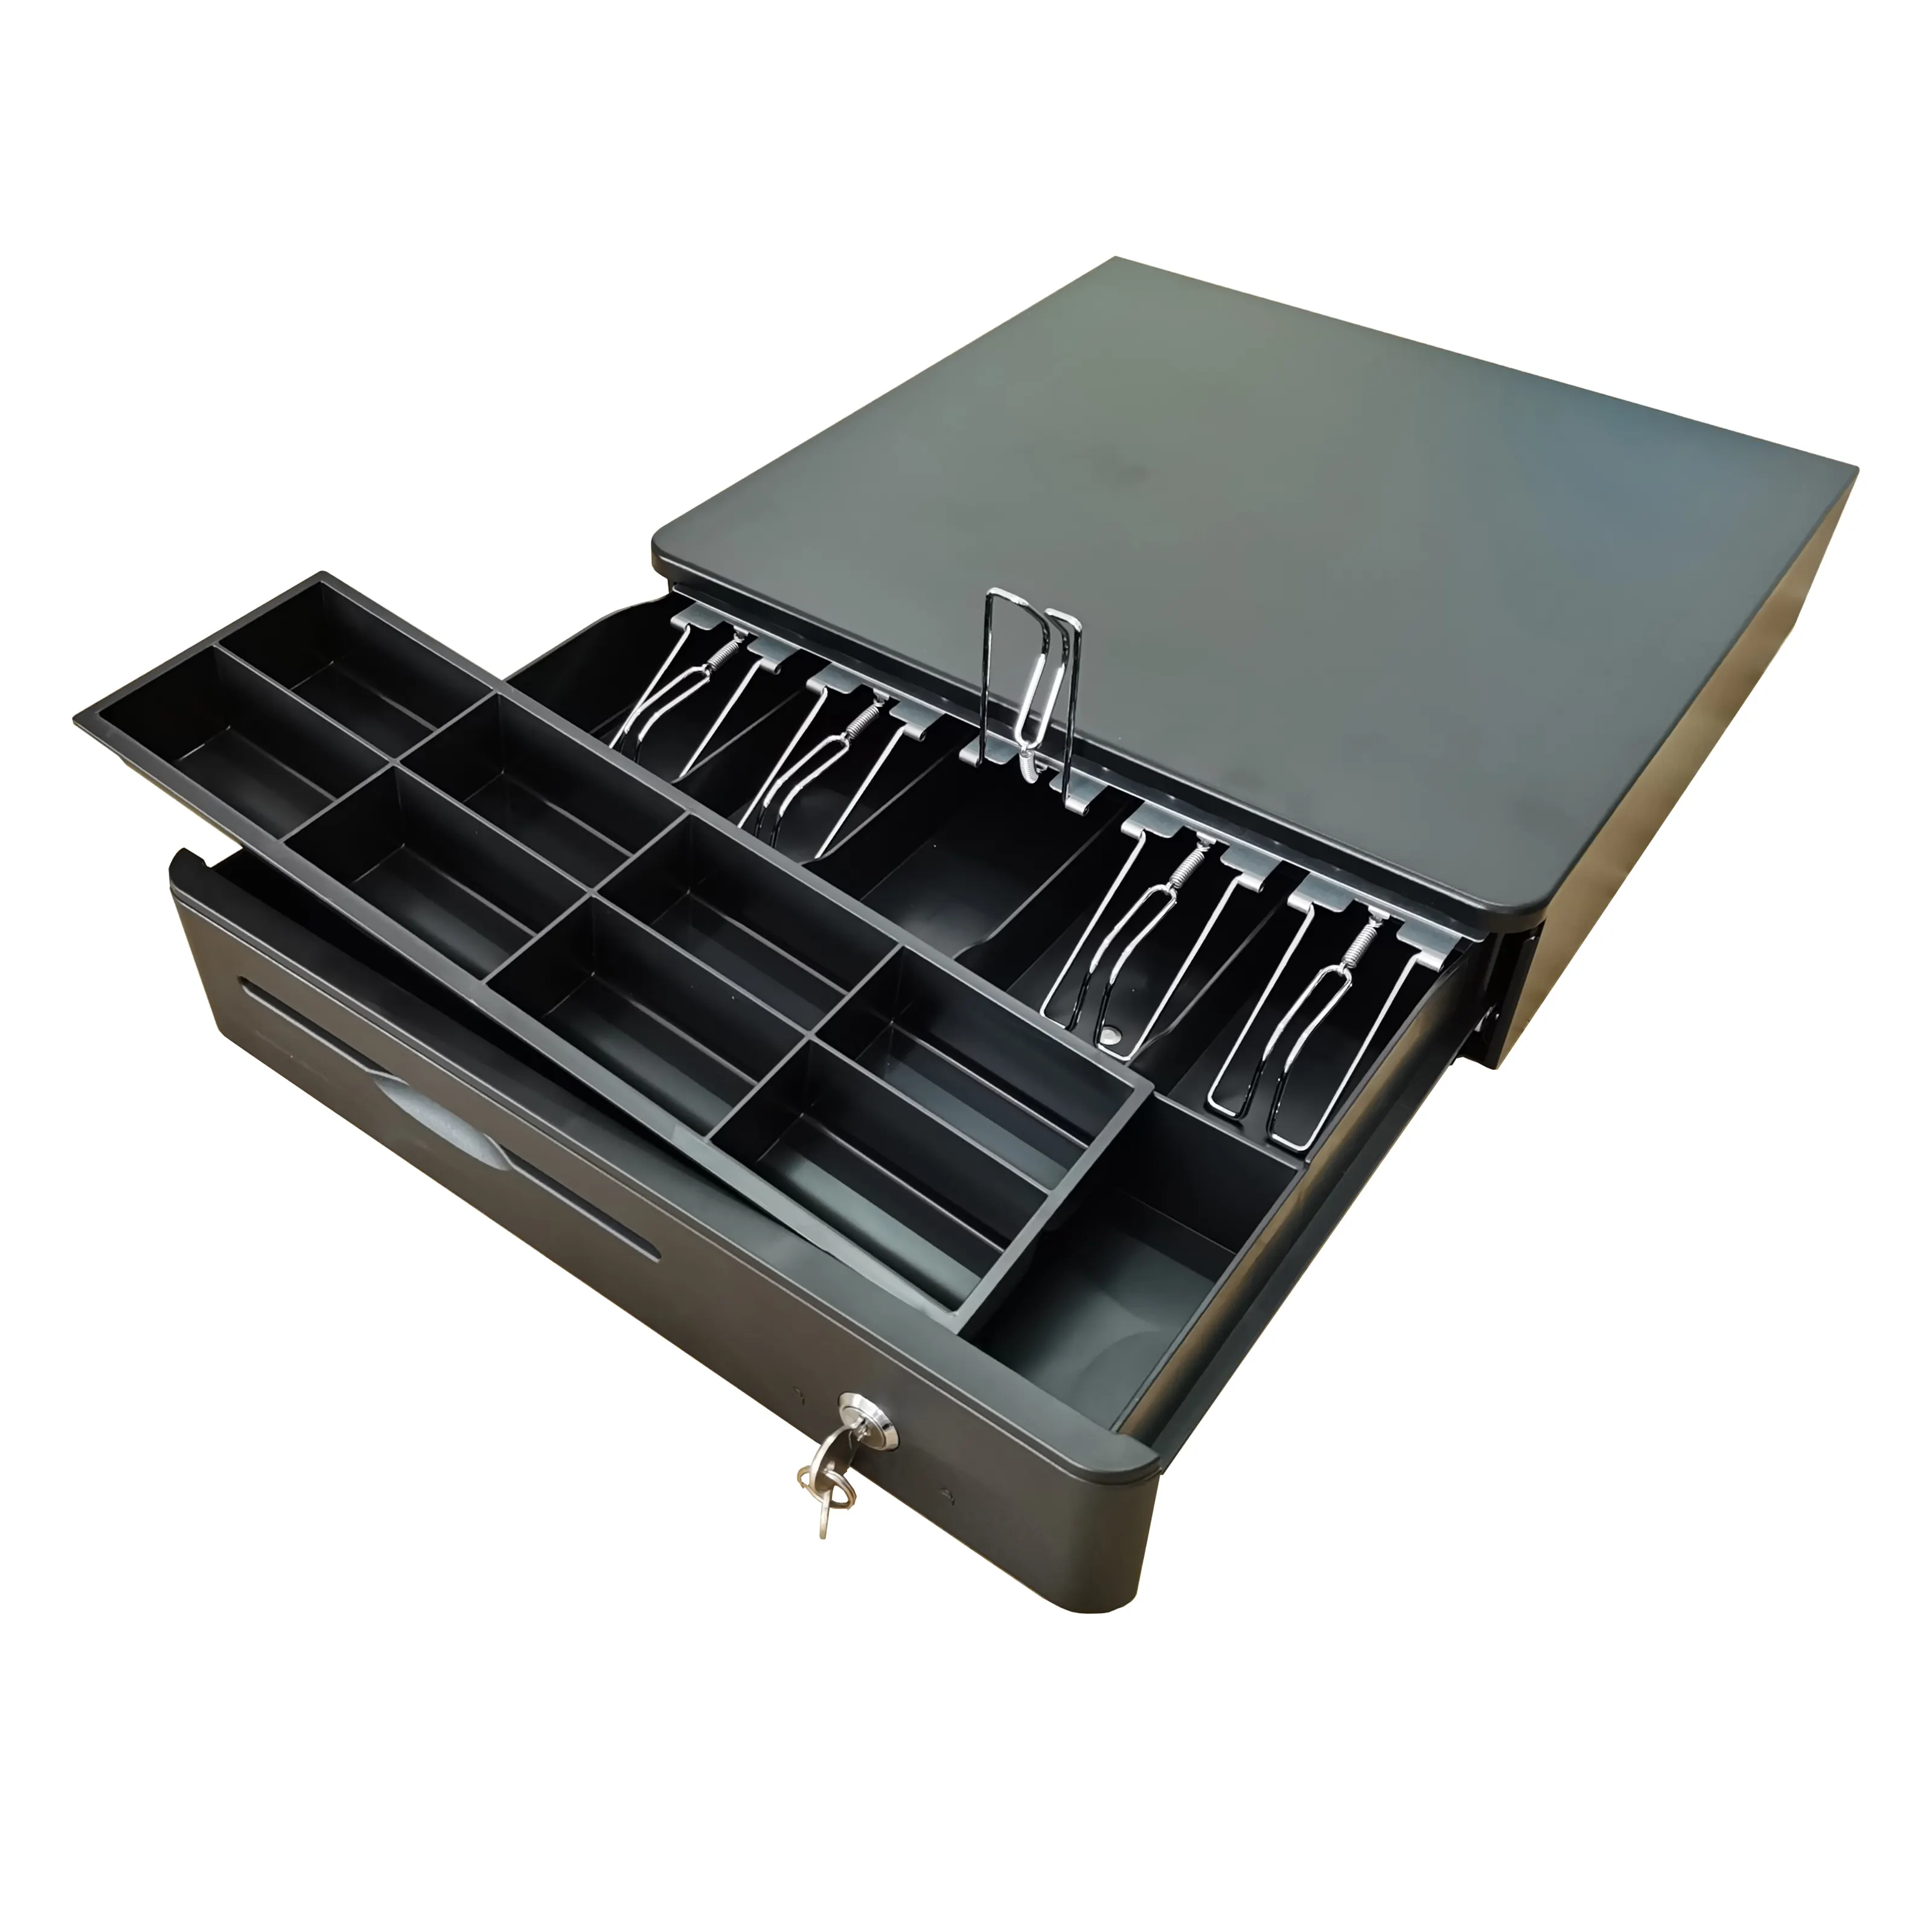 Sistemas POS Caja de efectivo Cajón de metal SupermarketPOS Cajón de caja registradora para cajón de efectivo de tamaño 405